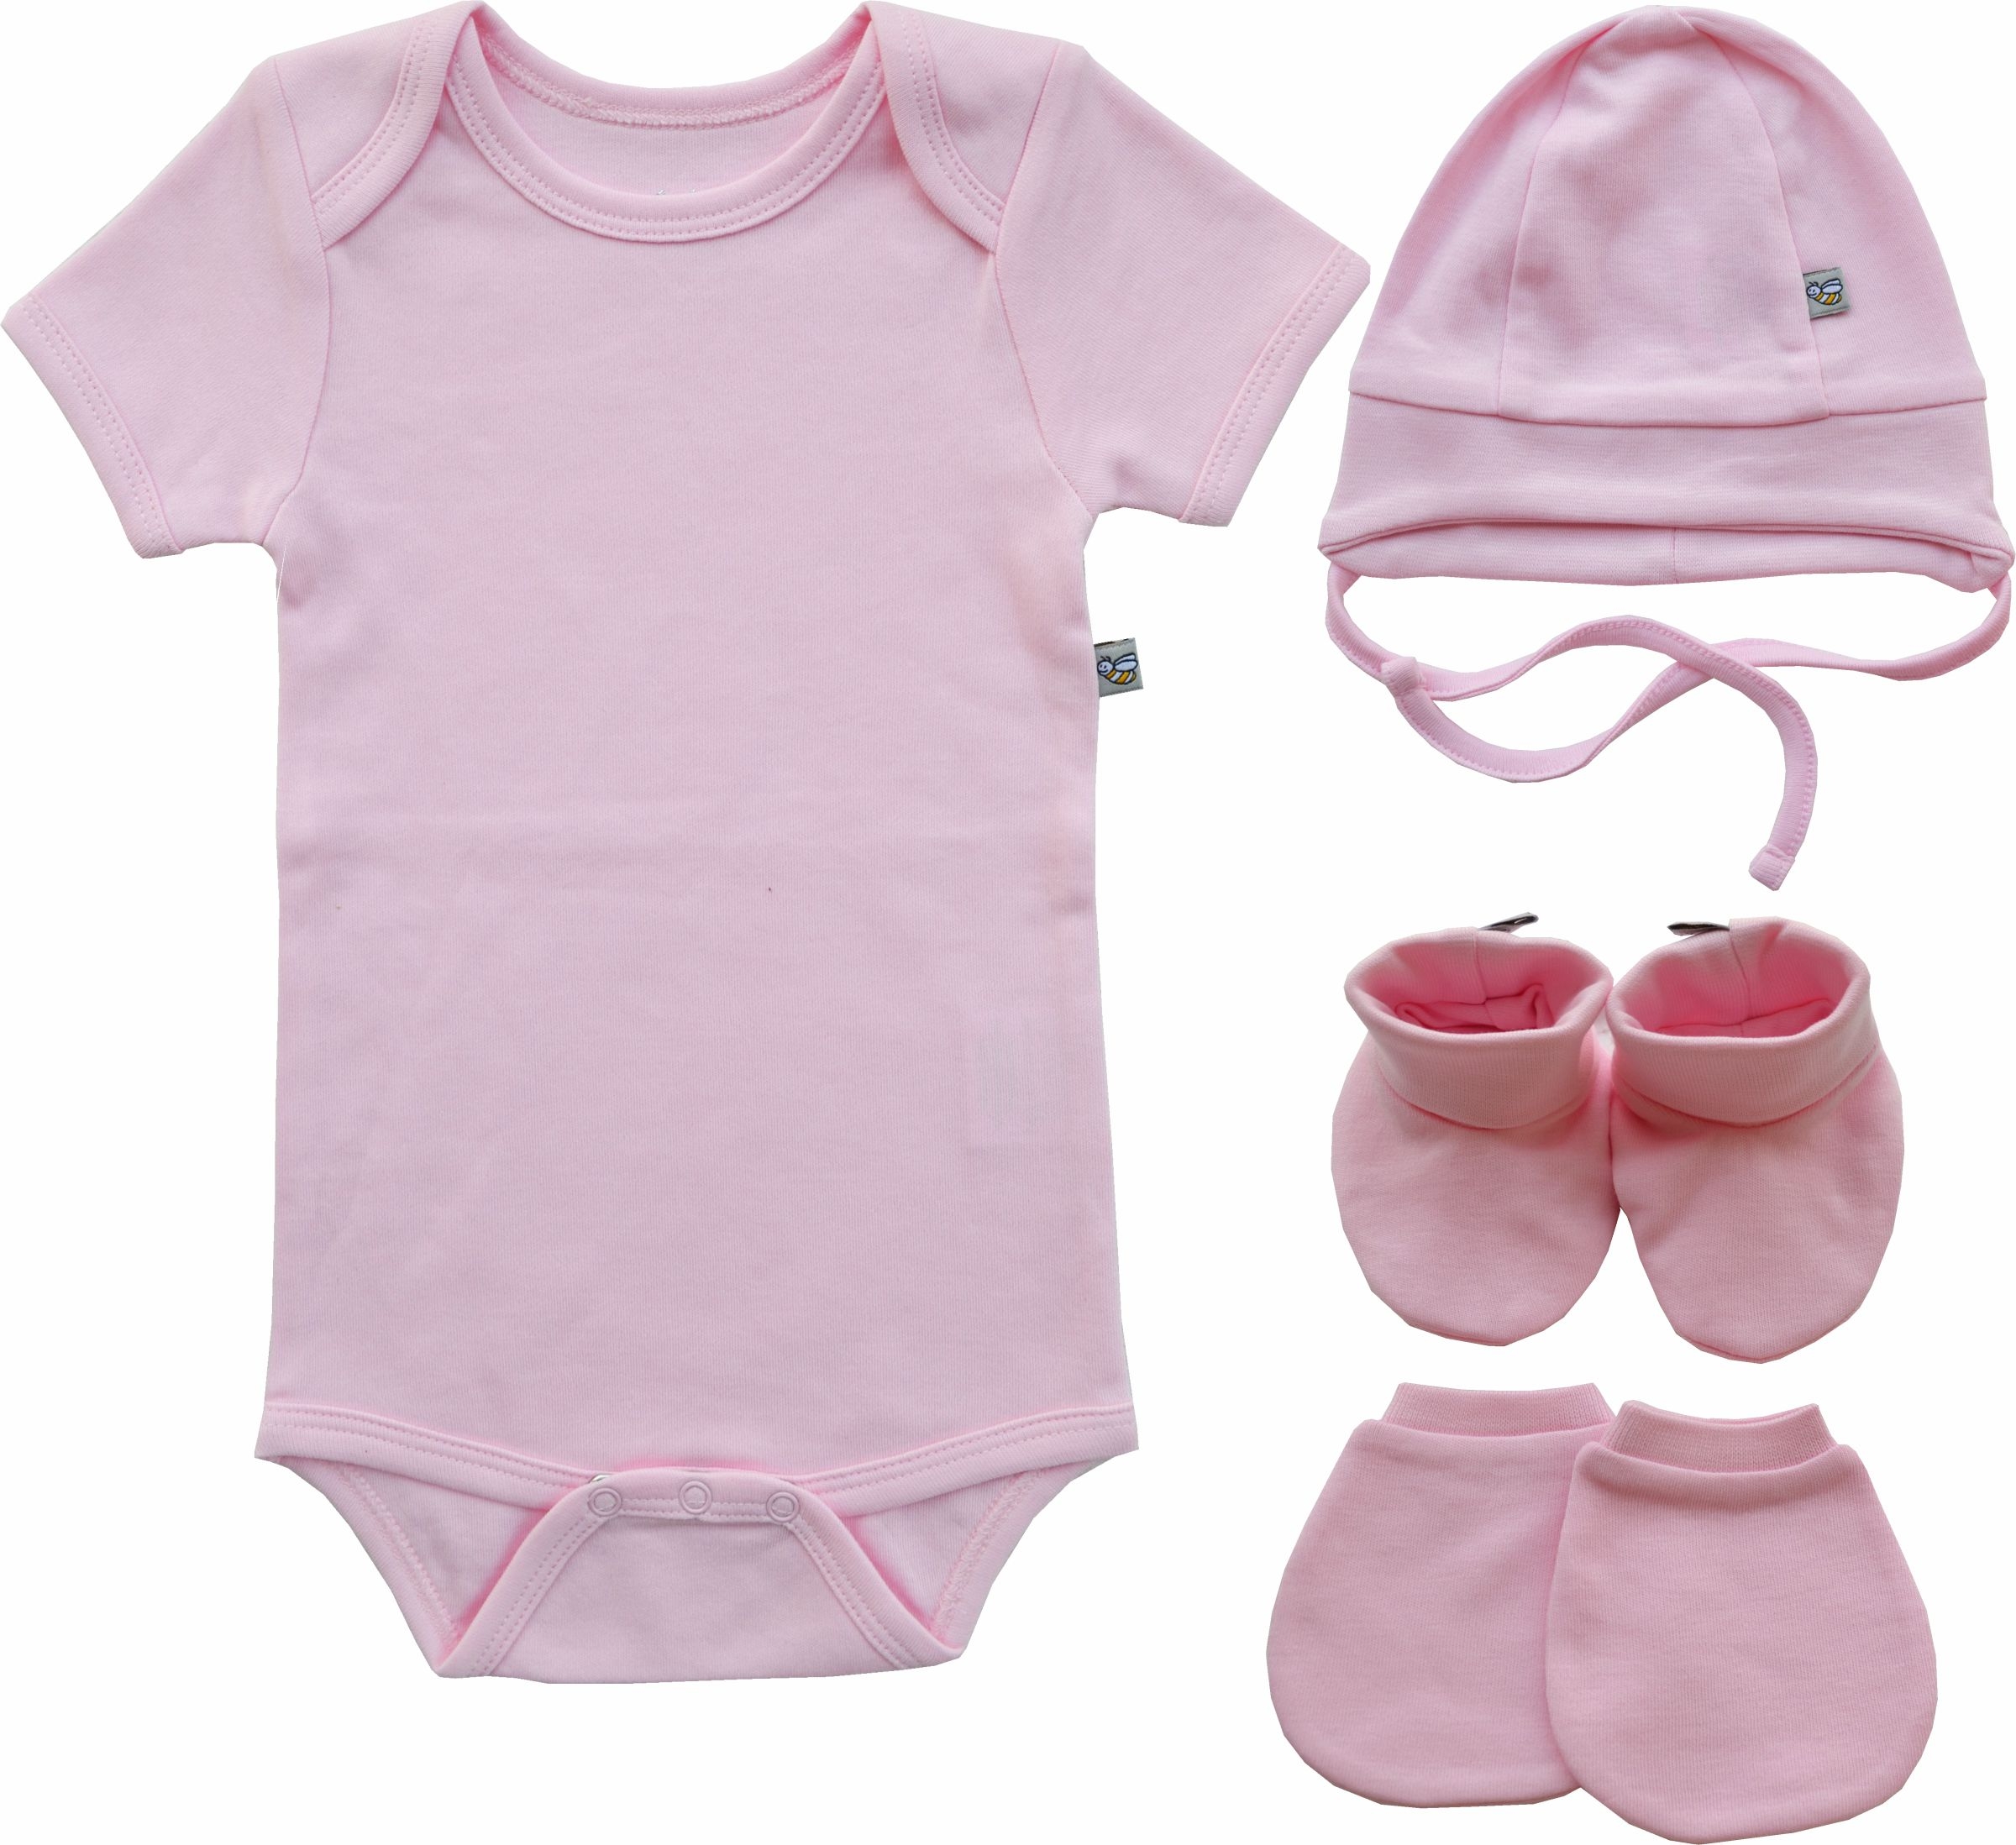 Babeez | Pink Baby Romper/Onesie+Pink Cap+Pink Mitten bootie set (100% Cotton) undefined